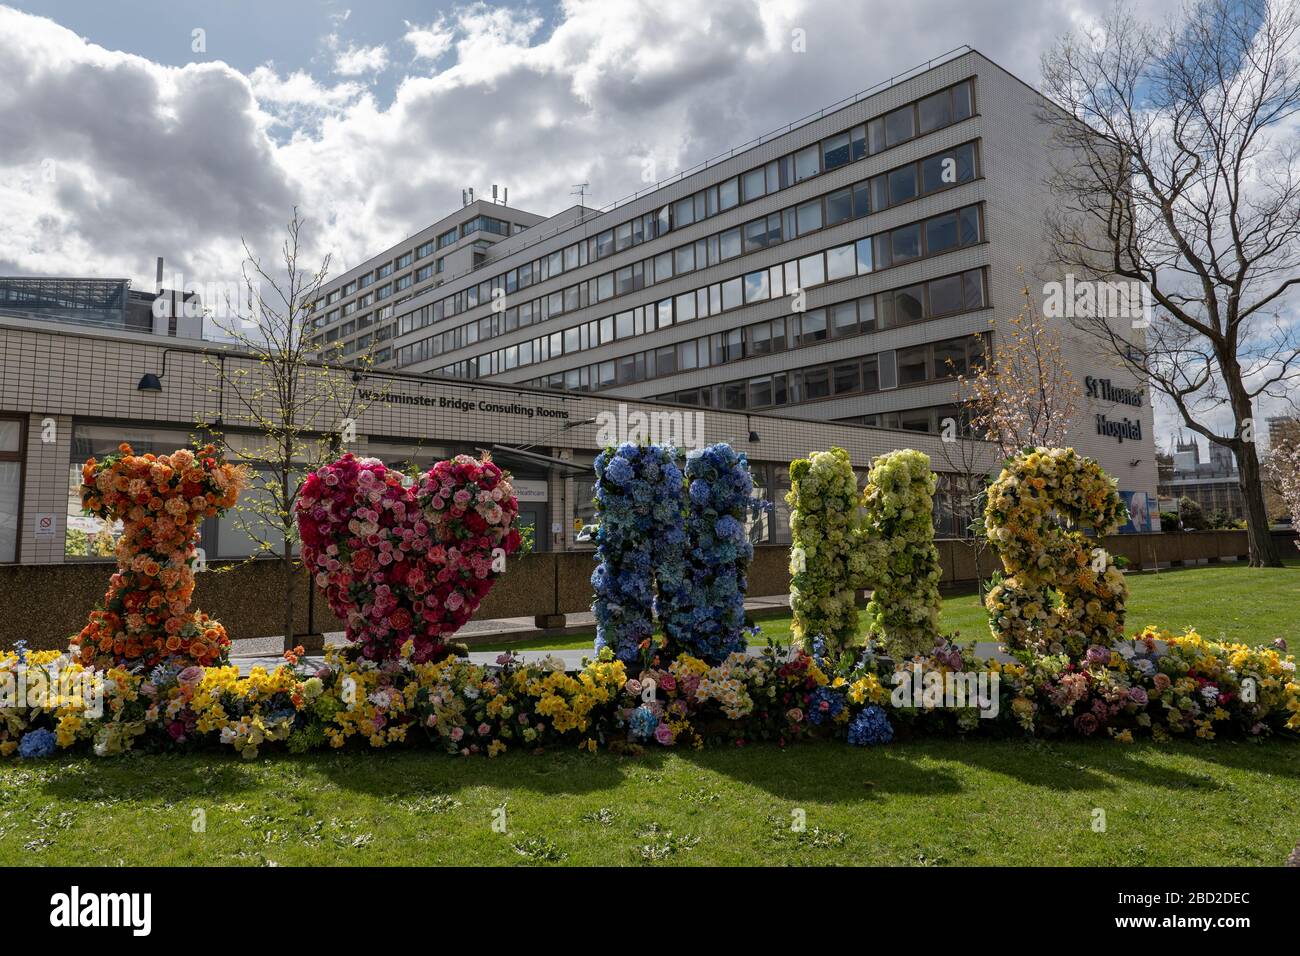 Londres, Royaume-Uni. 6 avril 2020. Une exposition de fleurs disant I Love NHS à l'extérieur de l'hôpital St Thomas de Westminster pendant la pandémie de coronavirus.(photo de Sam Mellish / Alay Live News) Banque D'Images